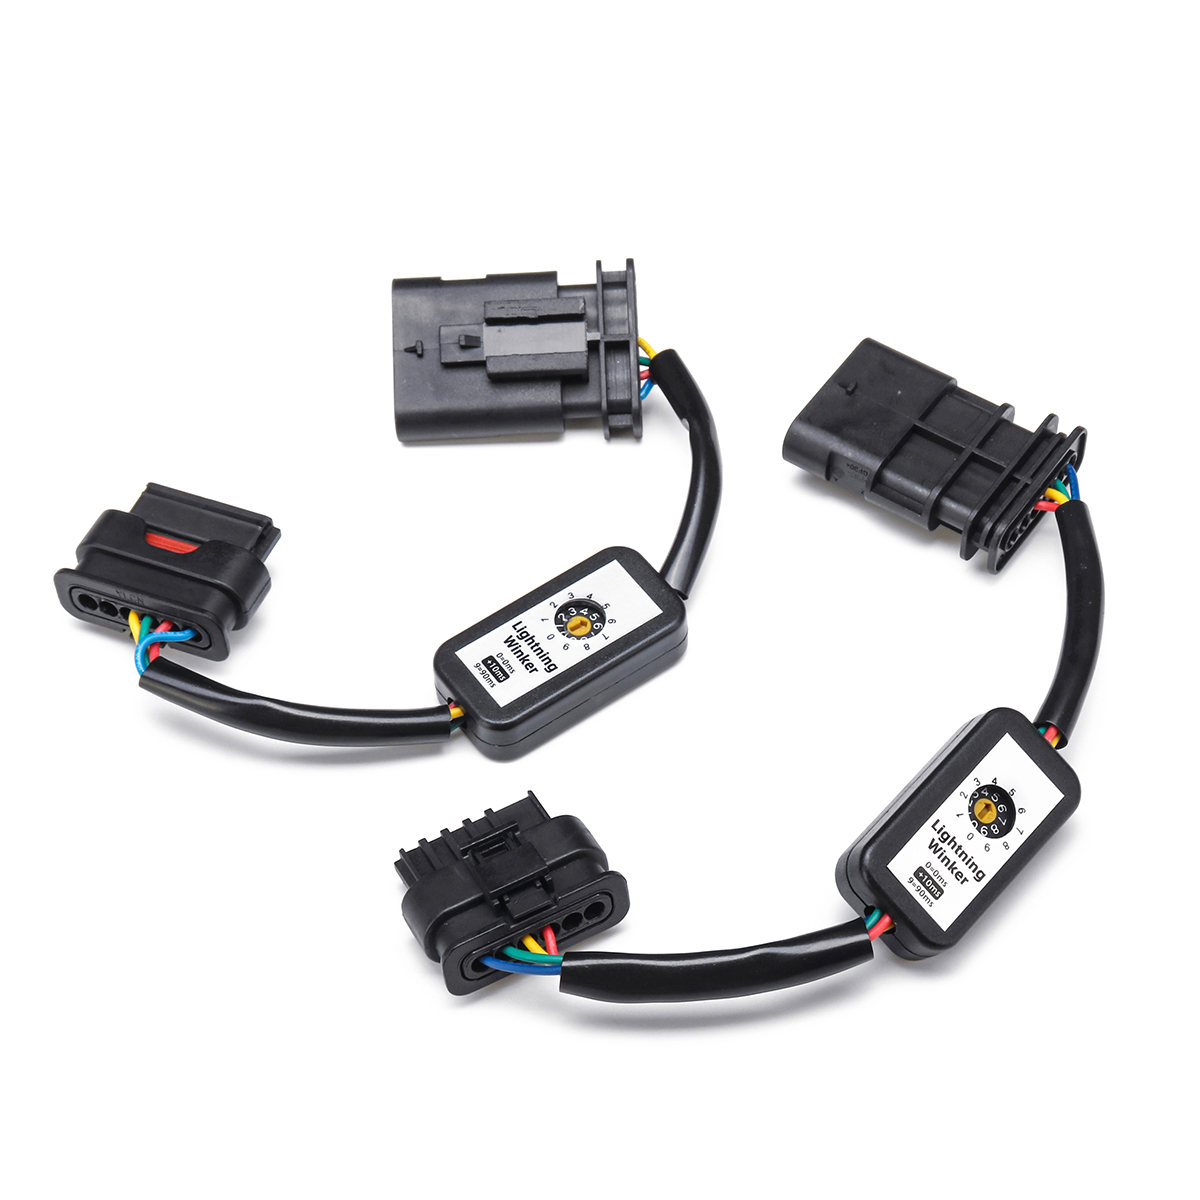 

2 x Динамический индикатор указателей поворота LED Модуль задних фонарей для BMW F30 3s F80 M3 LCI